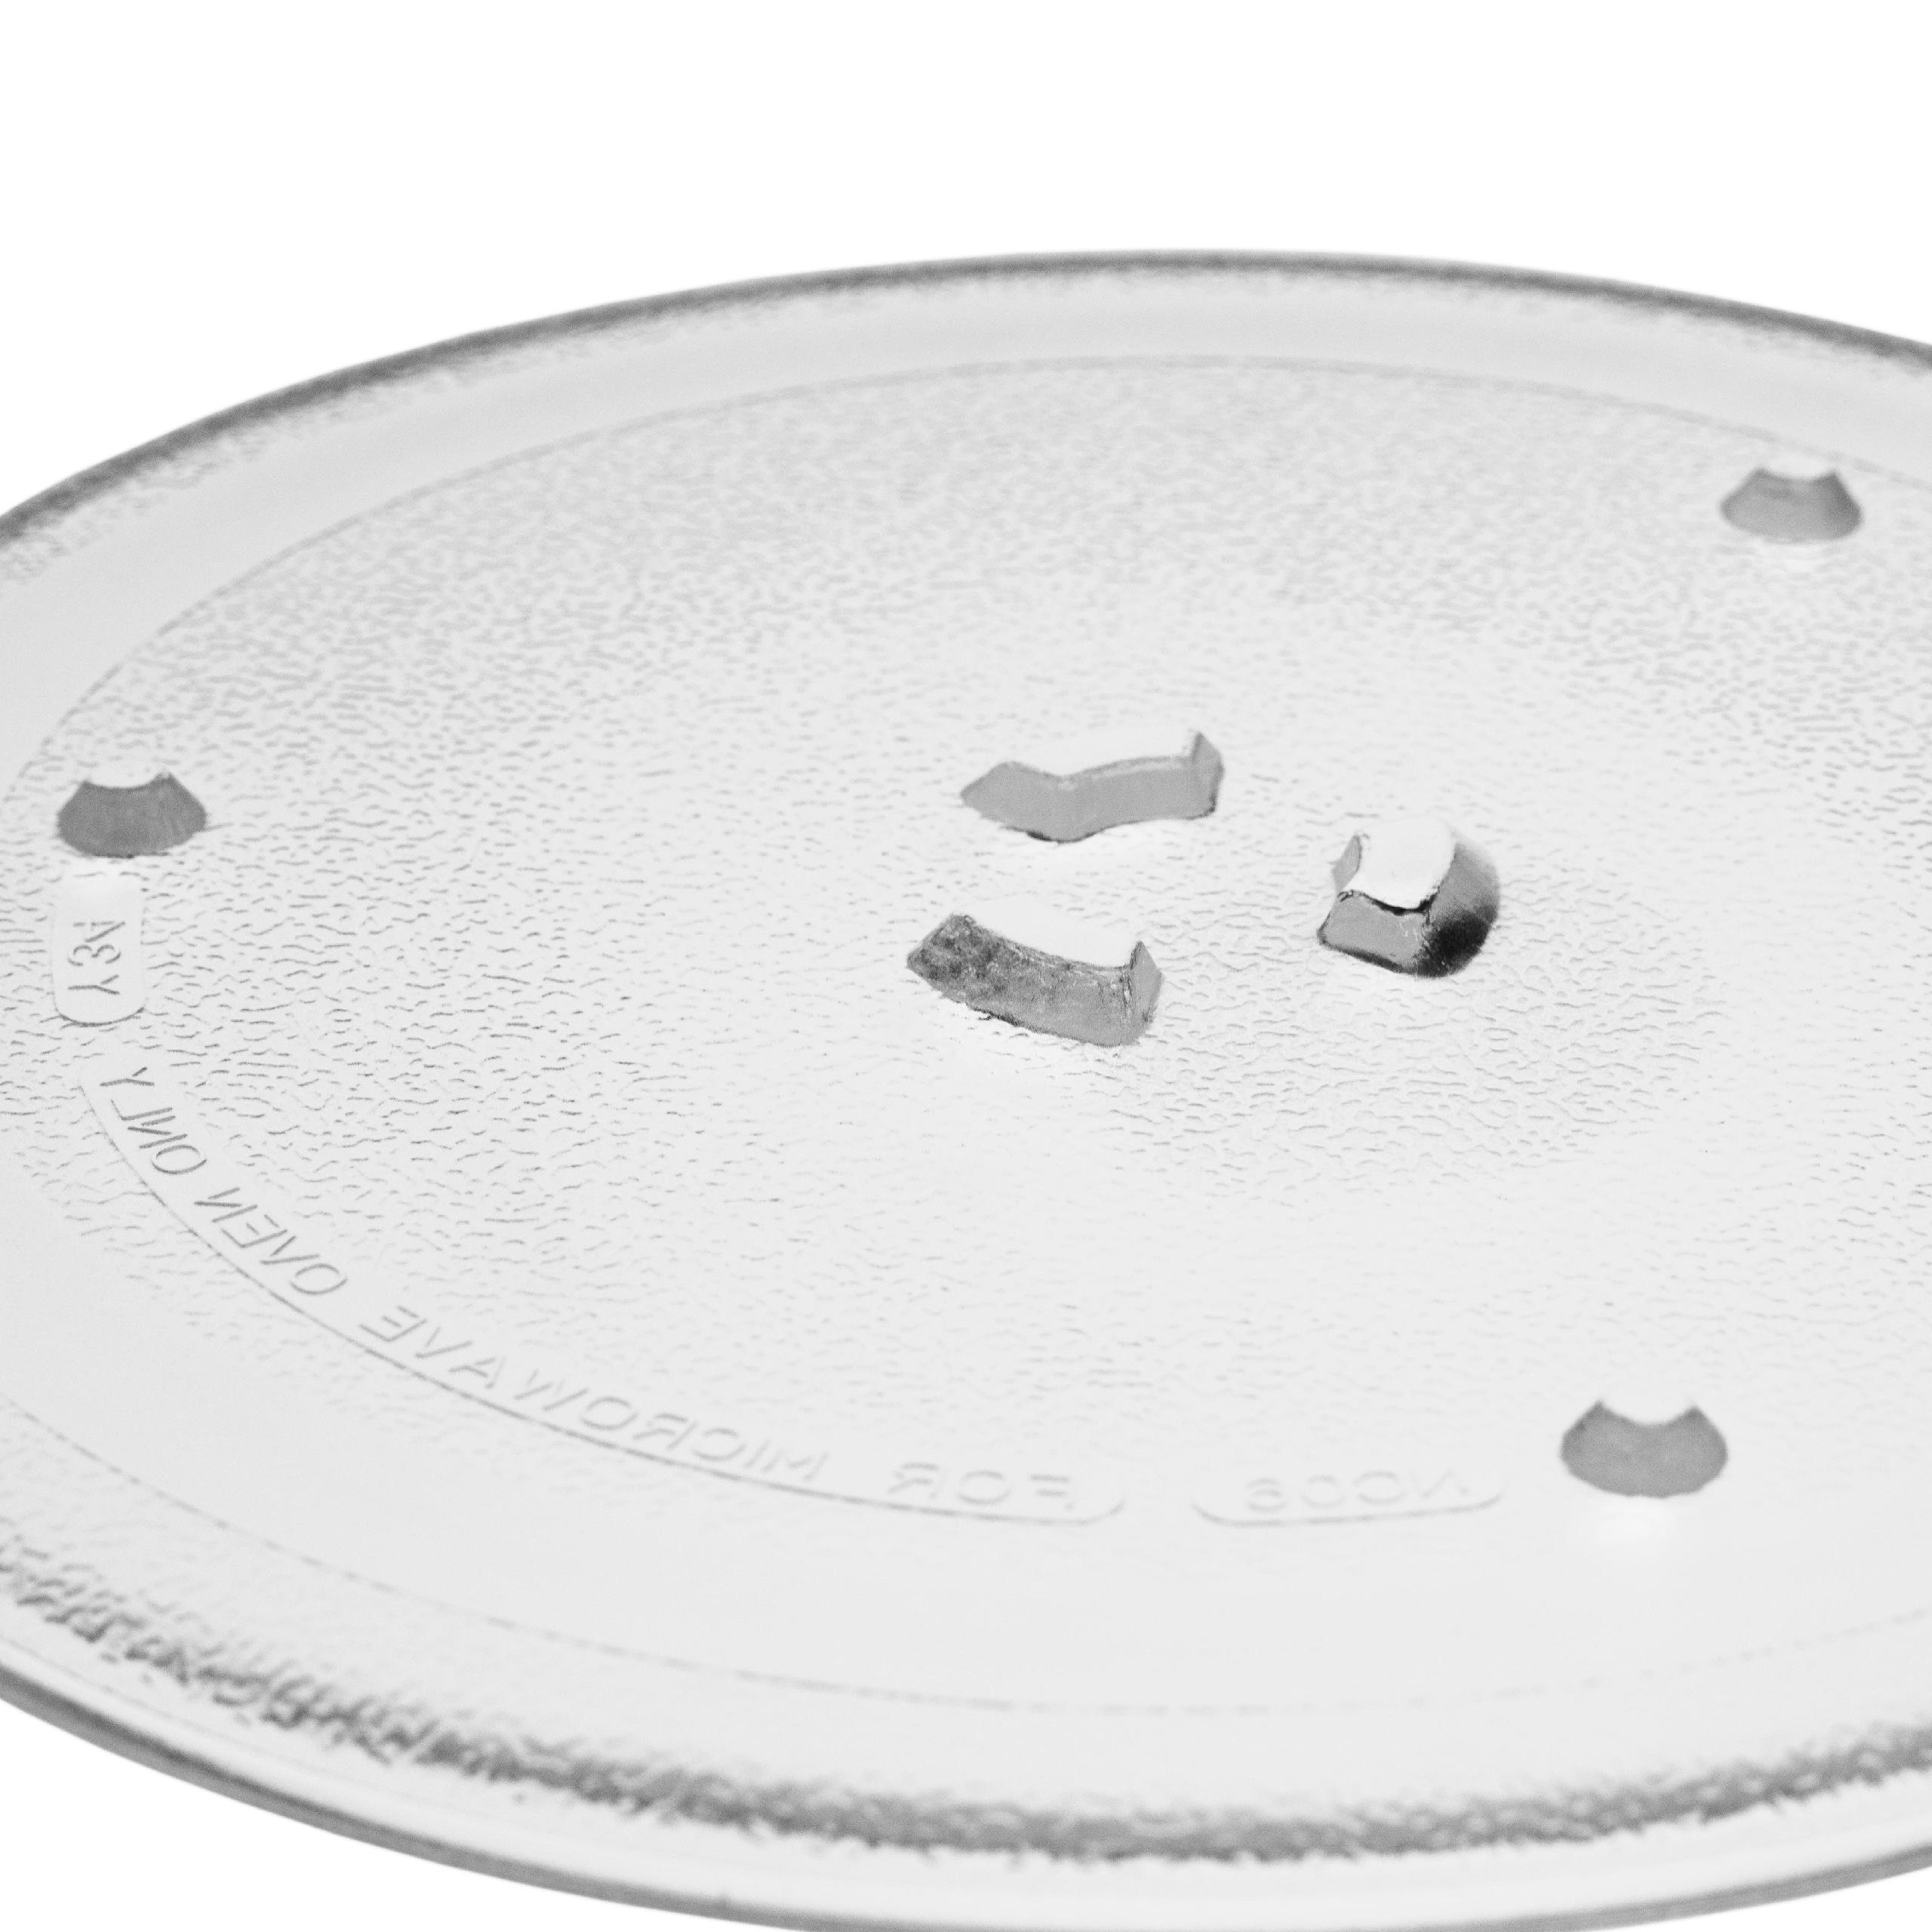 Szklany talerz do mikrofali Samsung zamiennik Samsung DE74-00027A - talerz obrotowy 25,5 cm